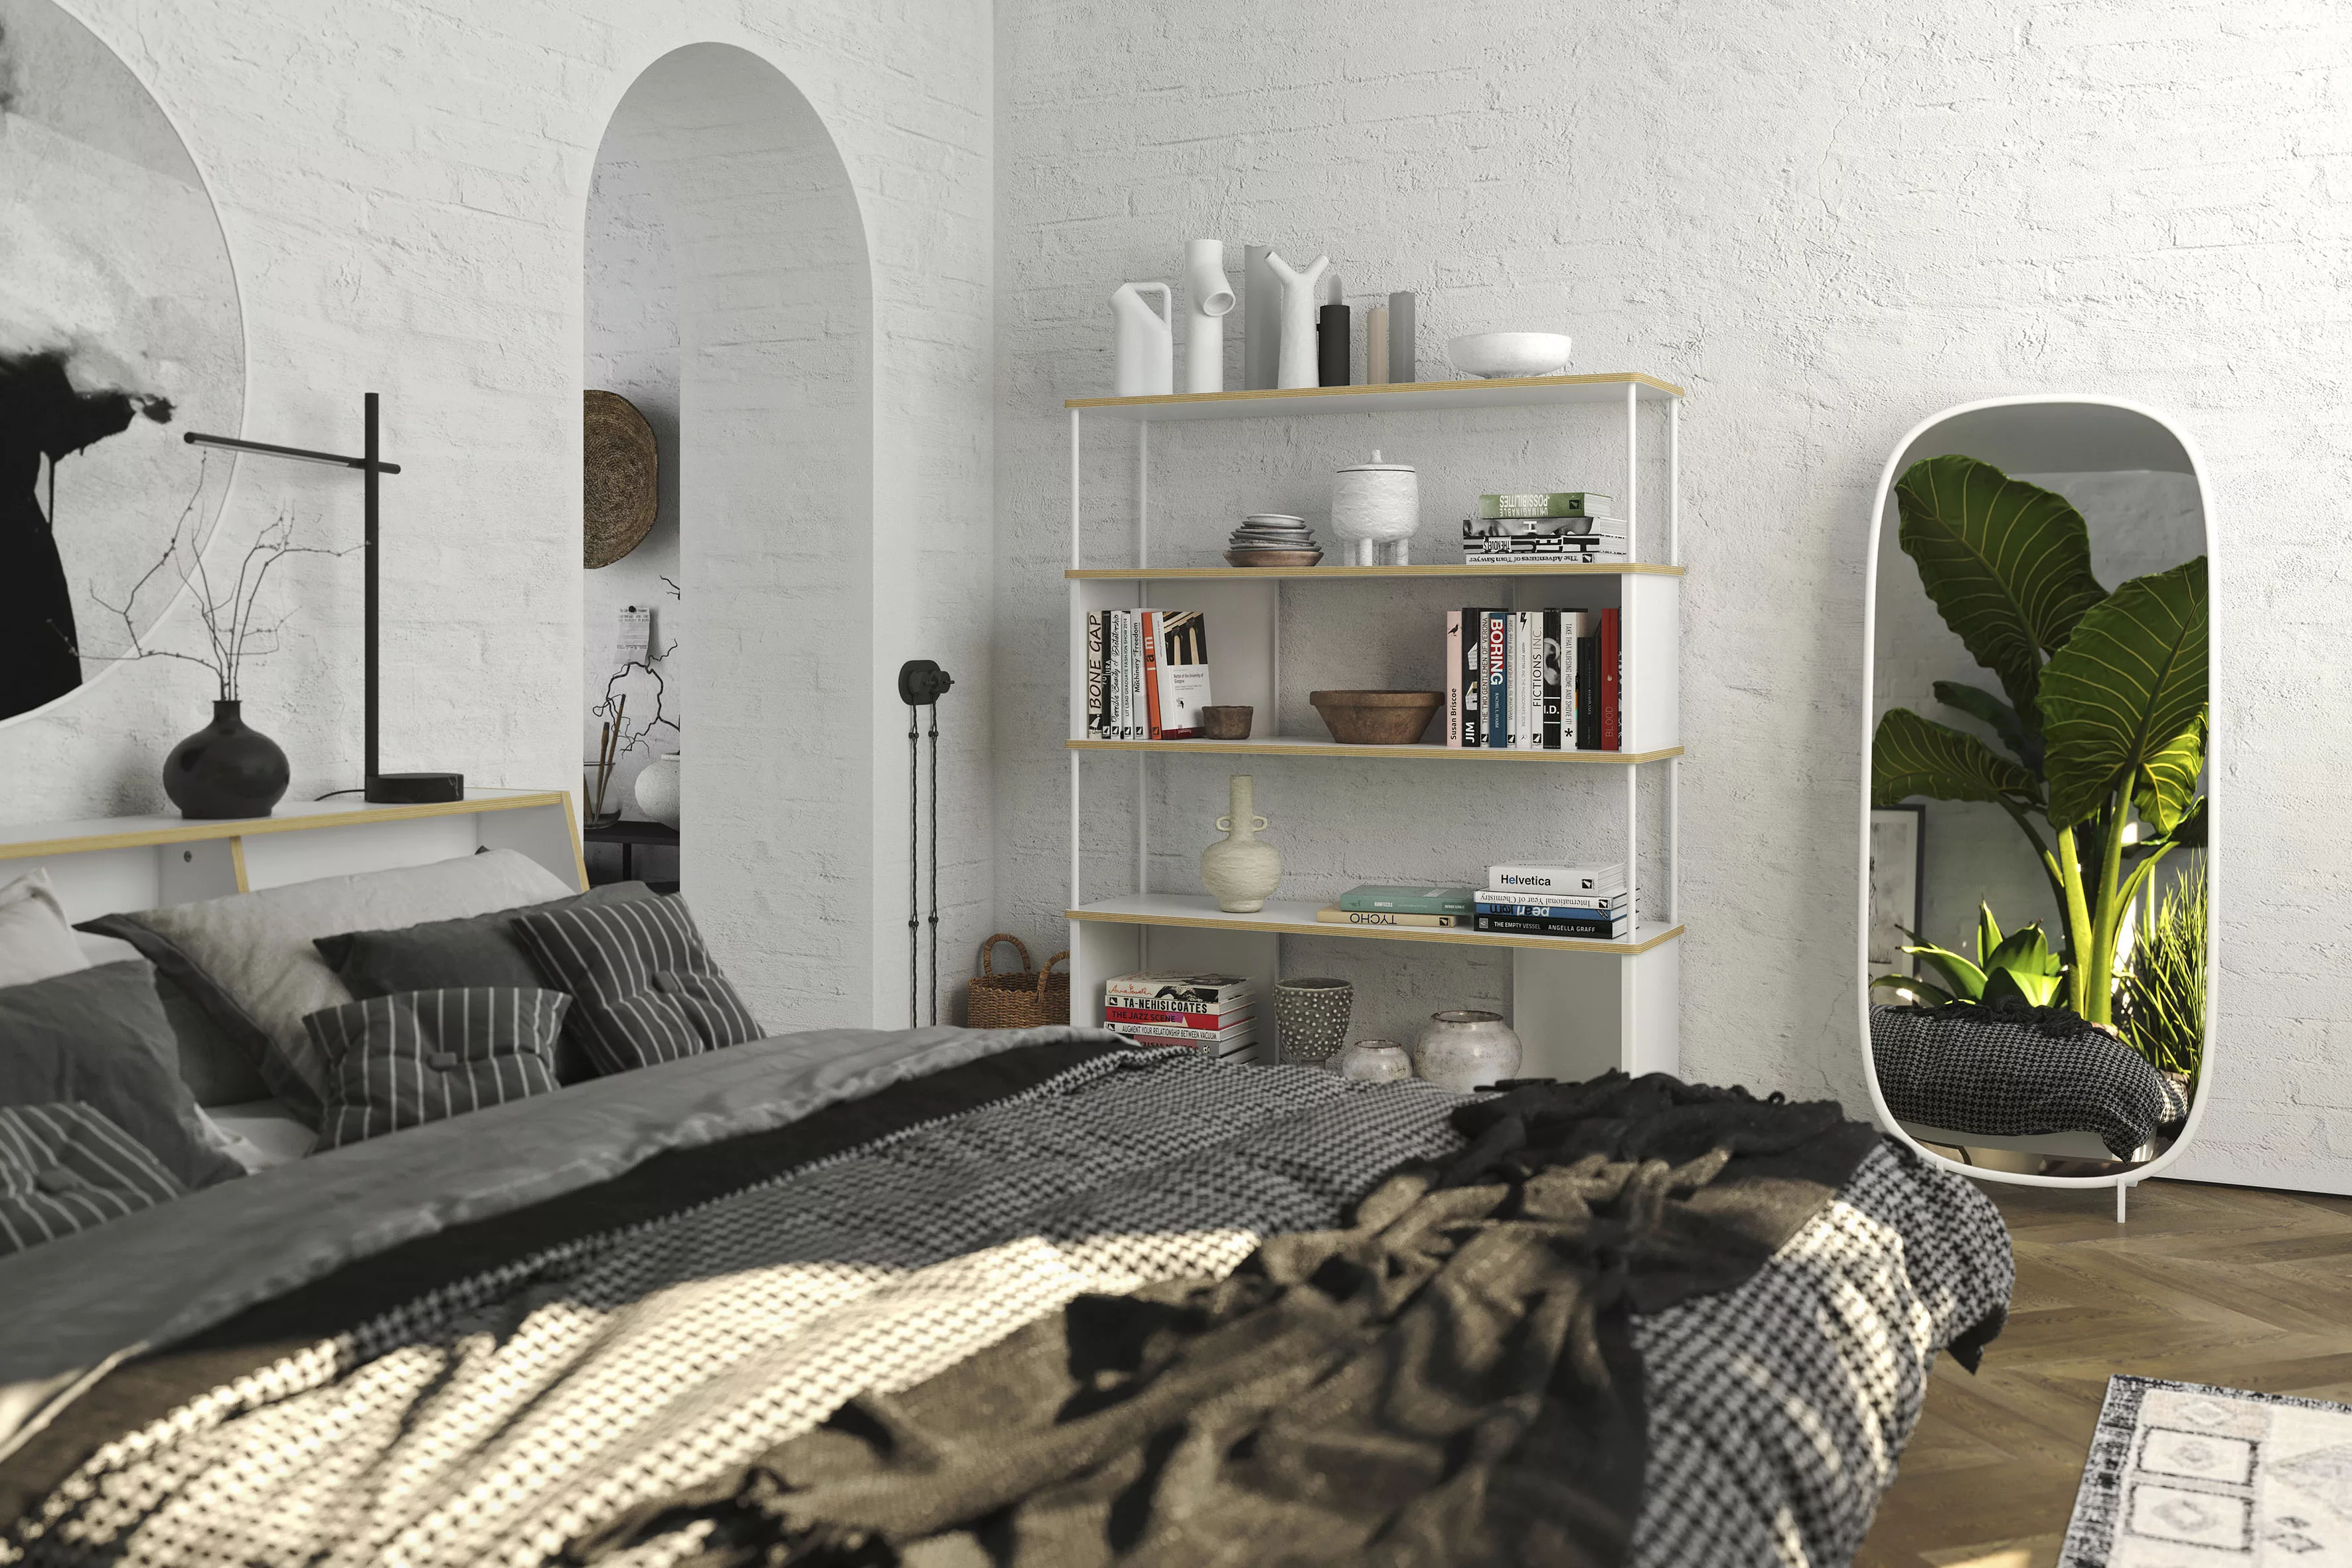 Müller SMALL LIVING Bett "Slope", in 3 Breiten, ausgezeichnet mit dem Germa günstig online kaufen